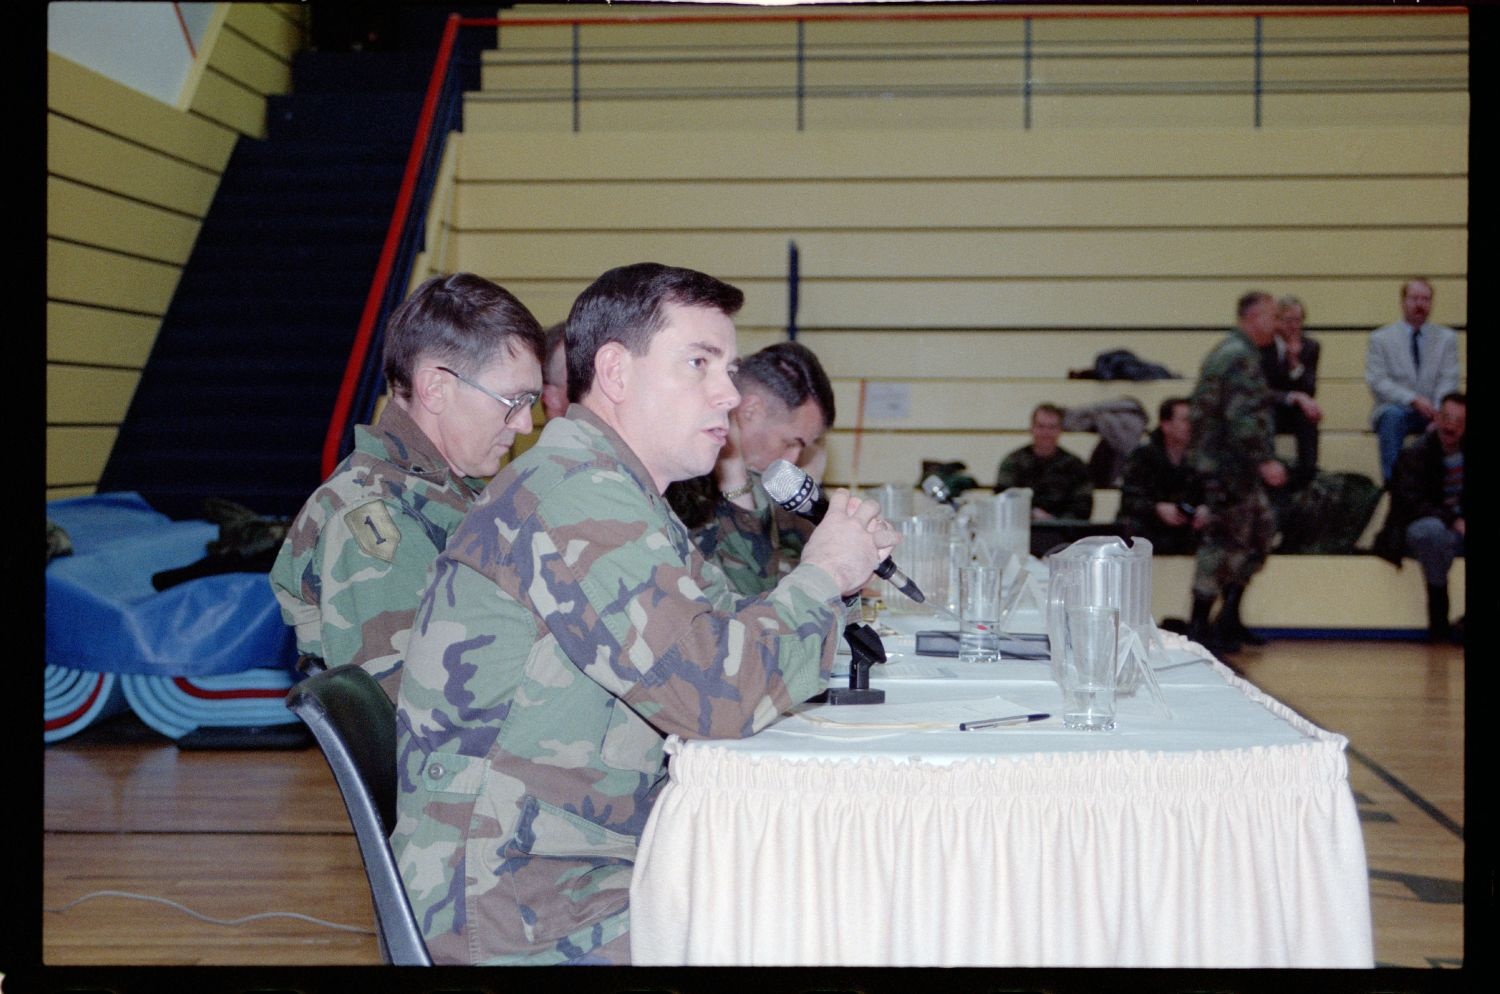 Fotografie: Town Hall Meeting der US-Community mit Brigadier General Sidney Shachnow im Cole Sports Center in Berlin-Dahlem